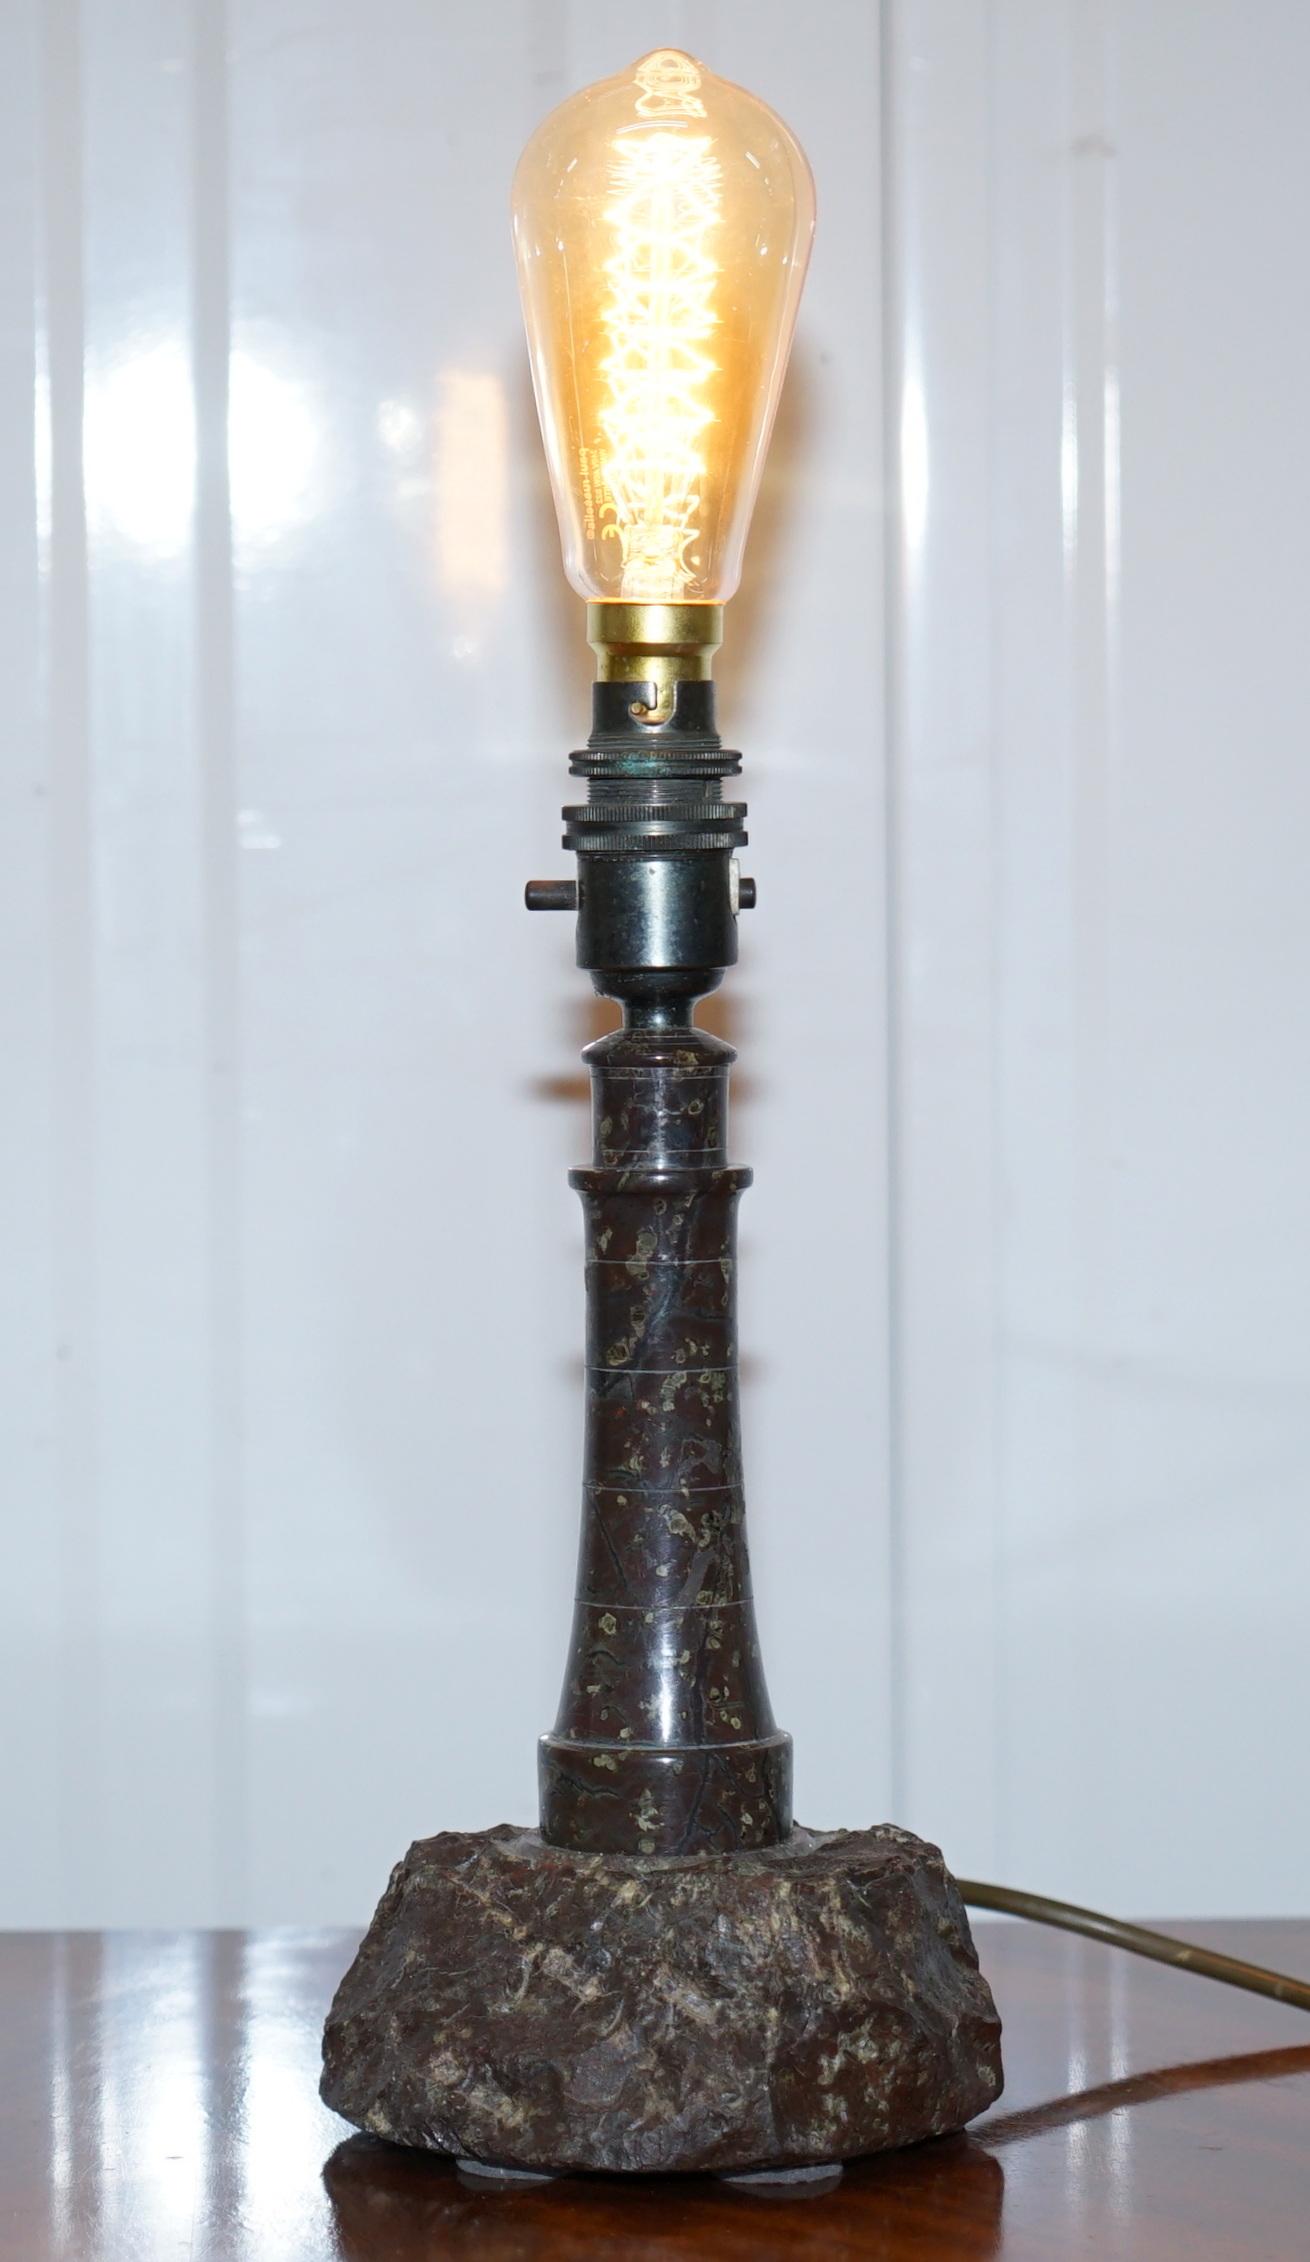 Wir freuen uns, diese schöne Vintage-Leuchtturm-Tischlampe aus kornischem Serpentinmarmor mit Bakelitbeschlag zum Verkauf anbieten zu können

Eine sehr gut aussehende dekorative Tischlampe, seine sehr detailliert und würde gut aussehen in jeder